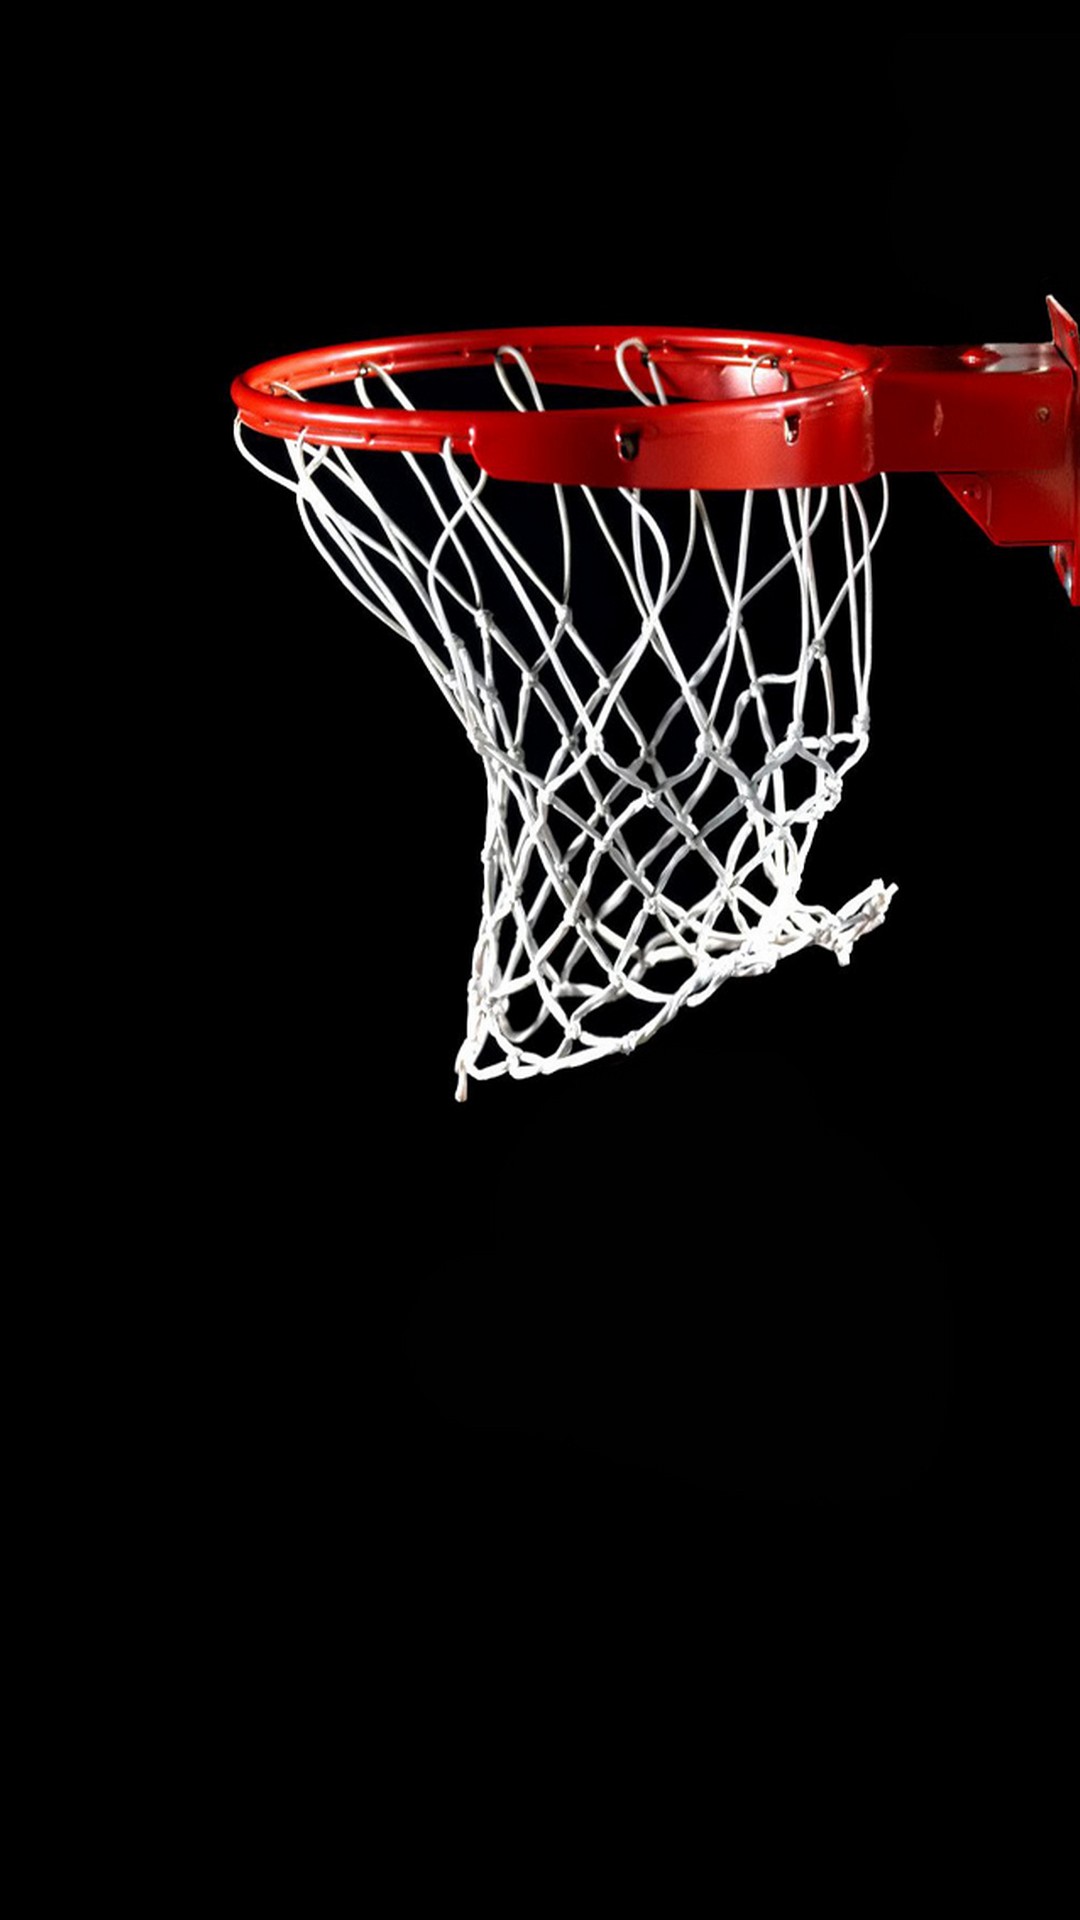 Nba HD Wallpaper For Mobile Basketball